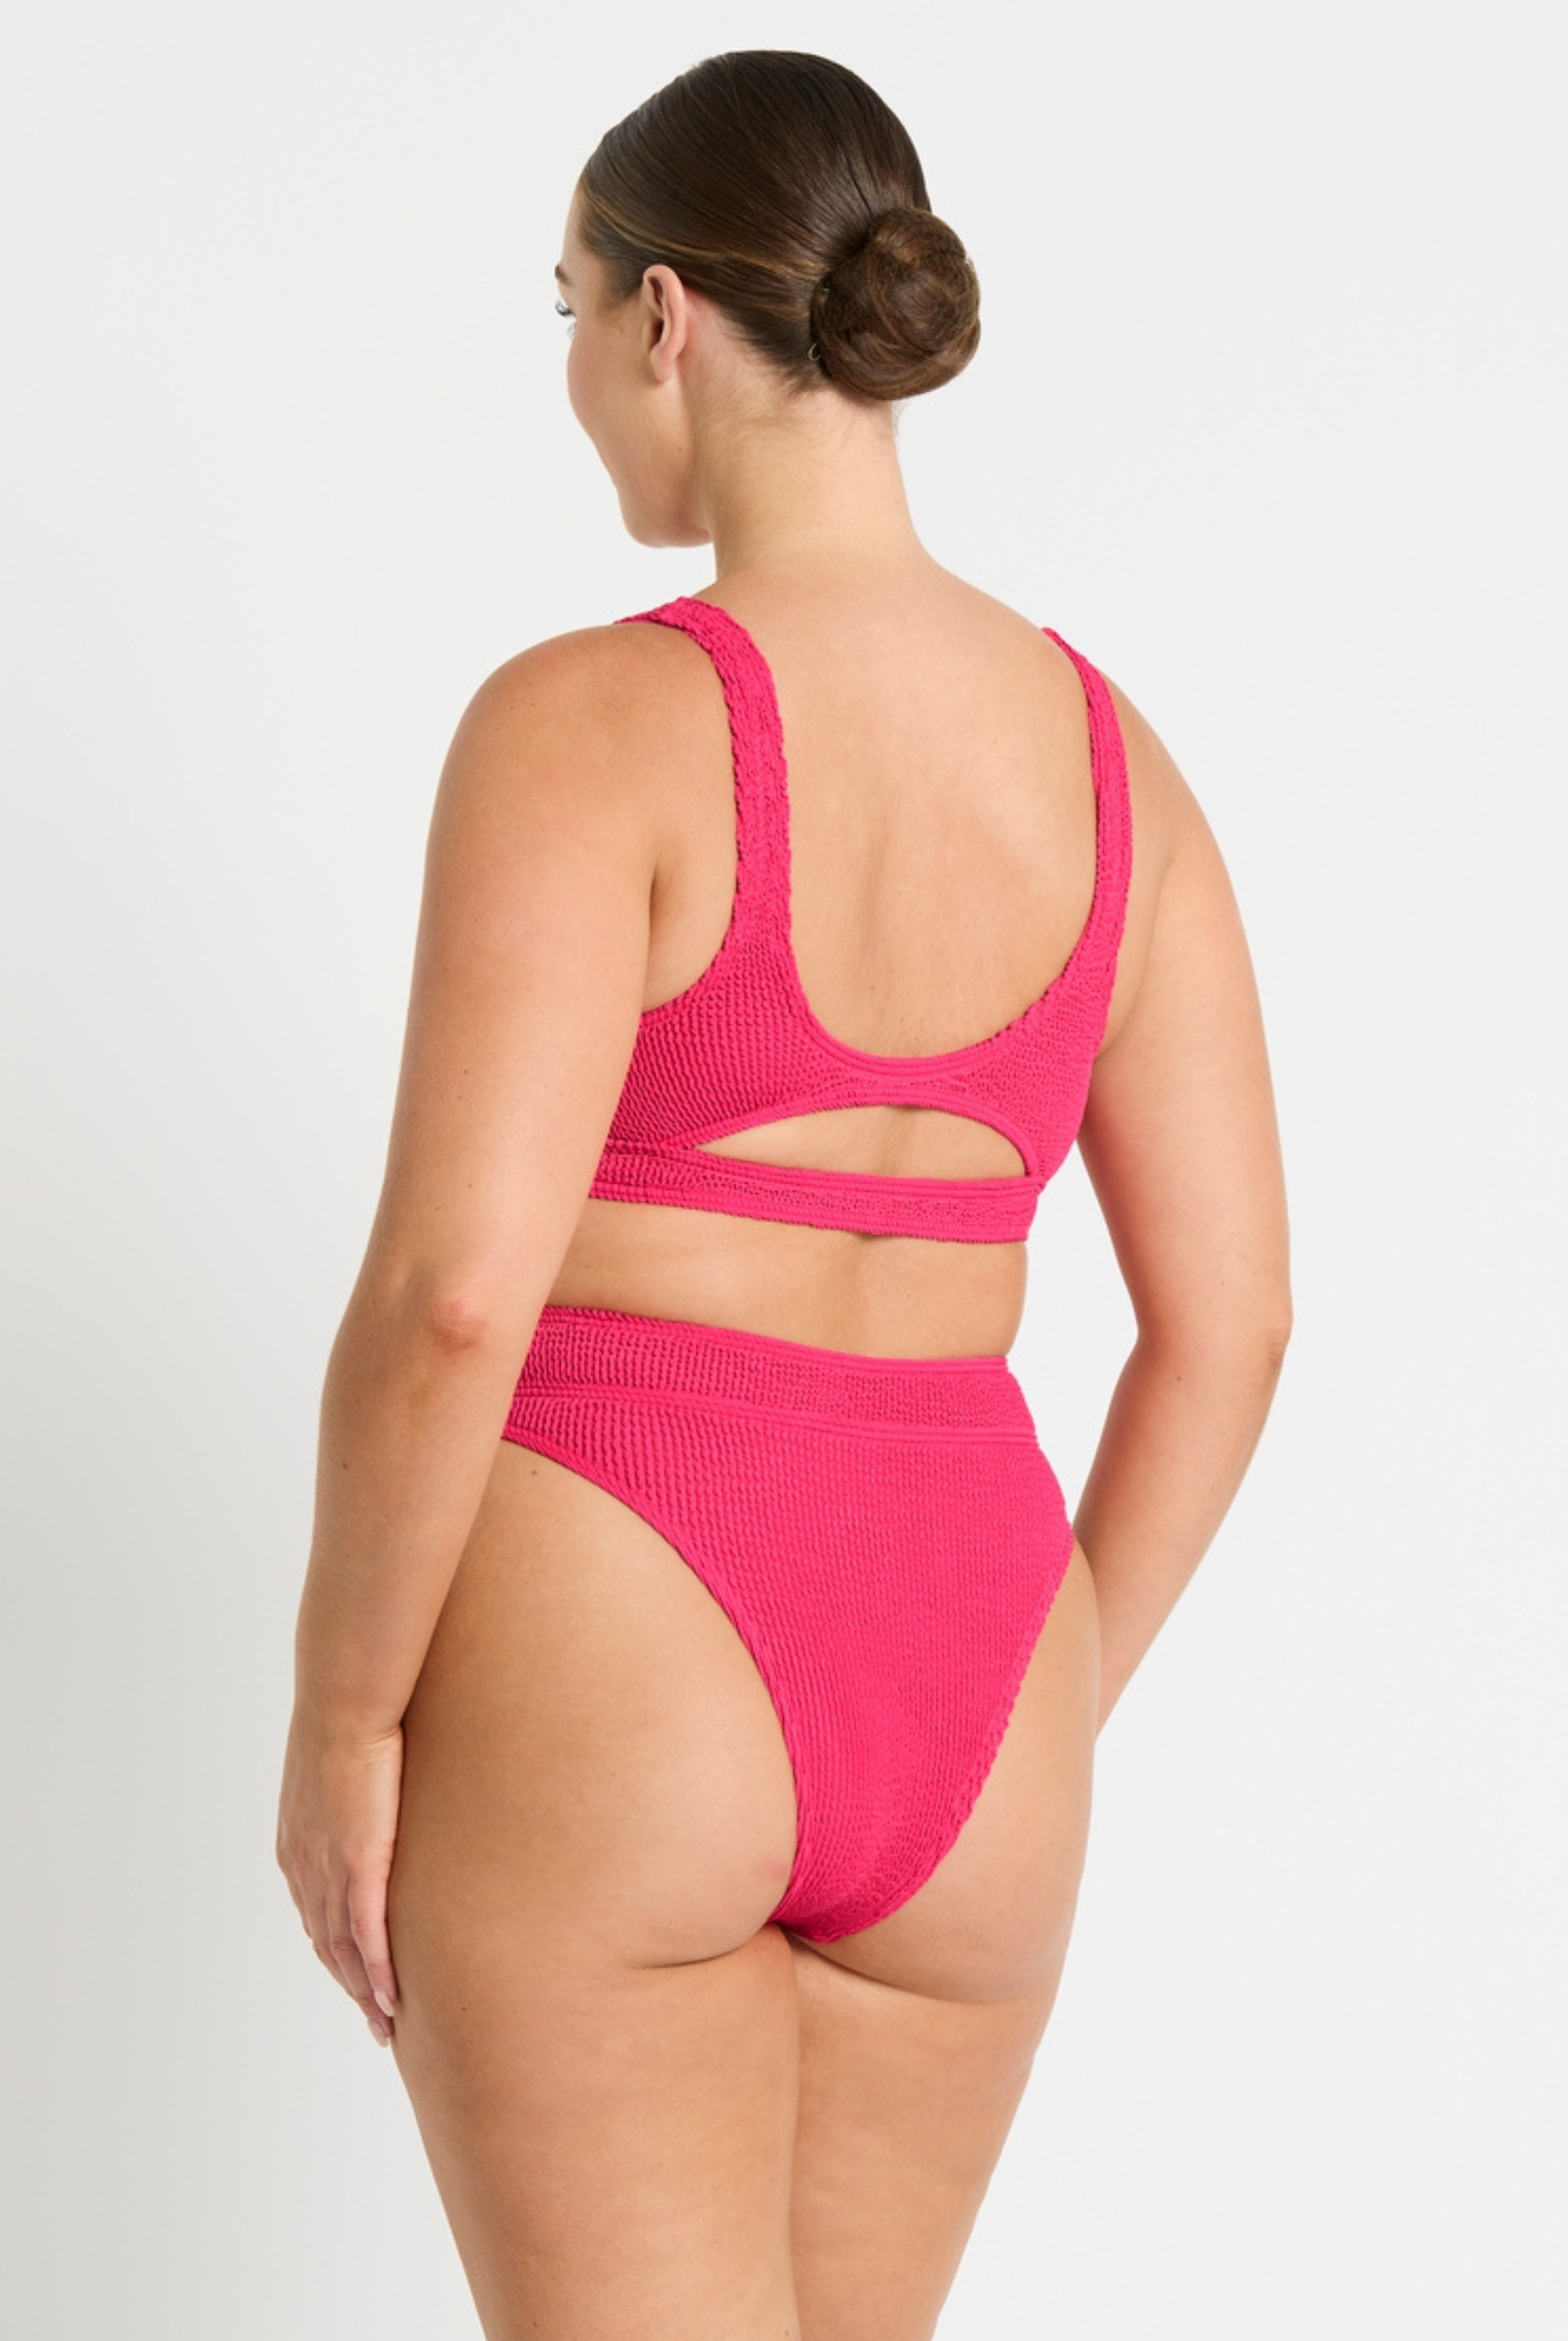 Sasha Crop Bikini Top in Raspberry pink crinkle from Bond Eye Australia